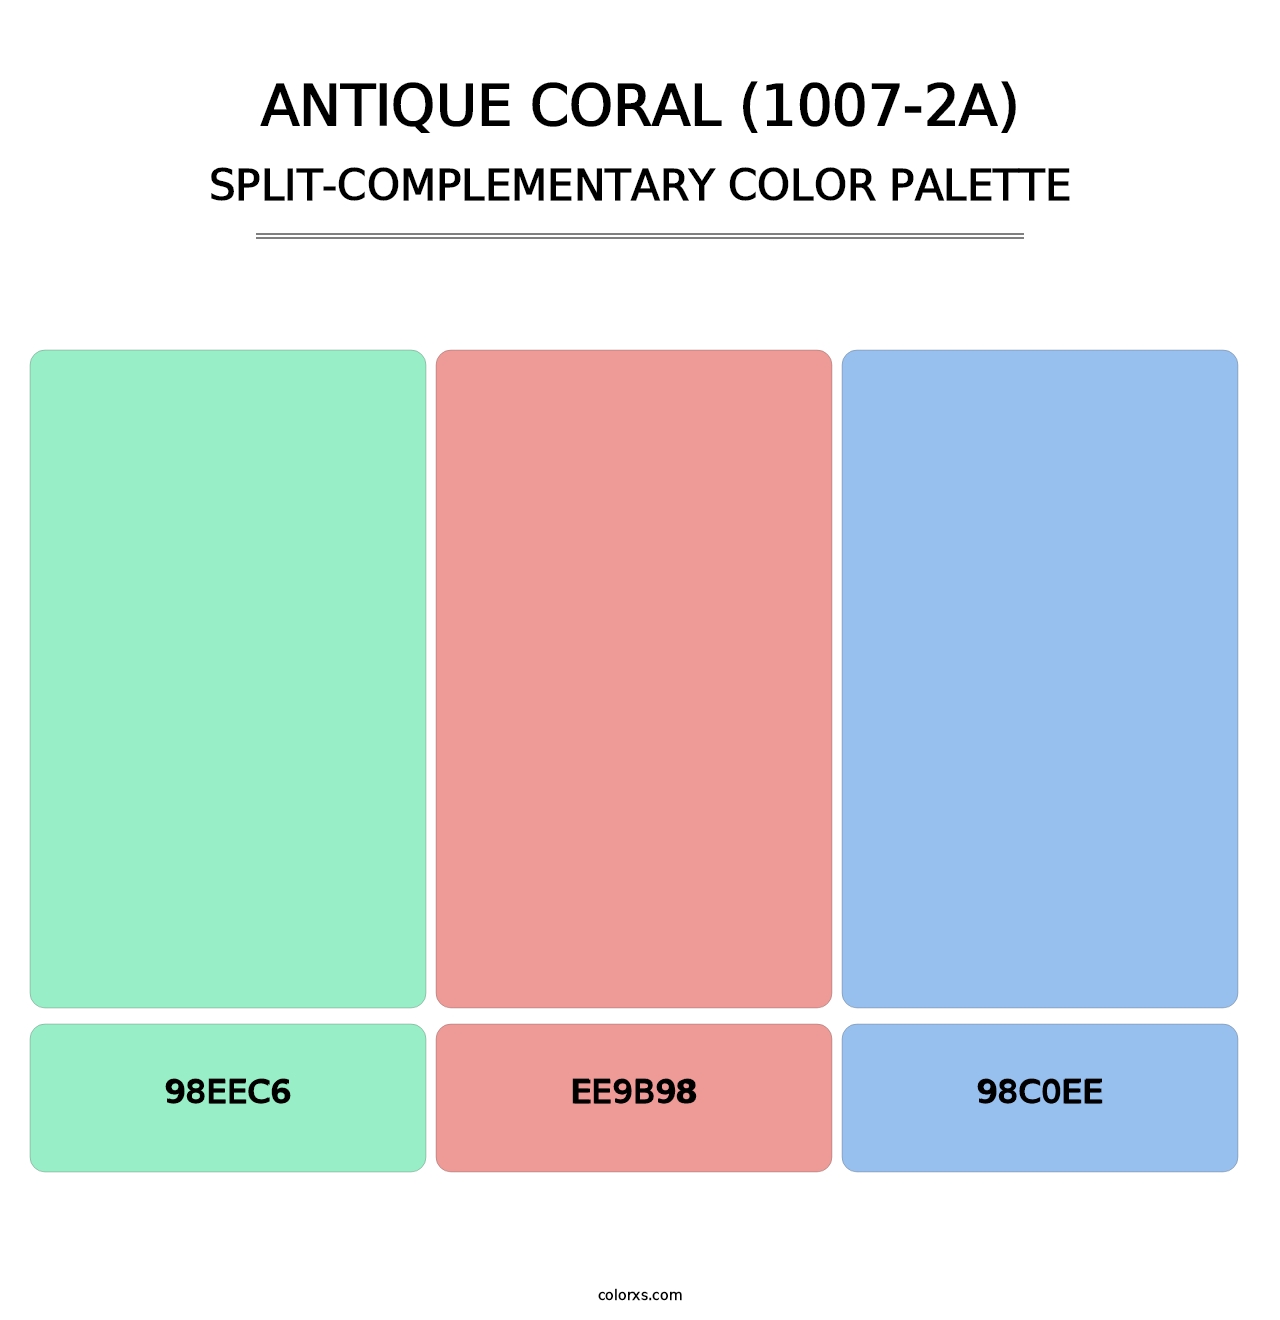 Antique Coral (1007-2A) - Split-Complementary Color Palette